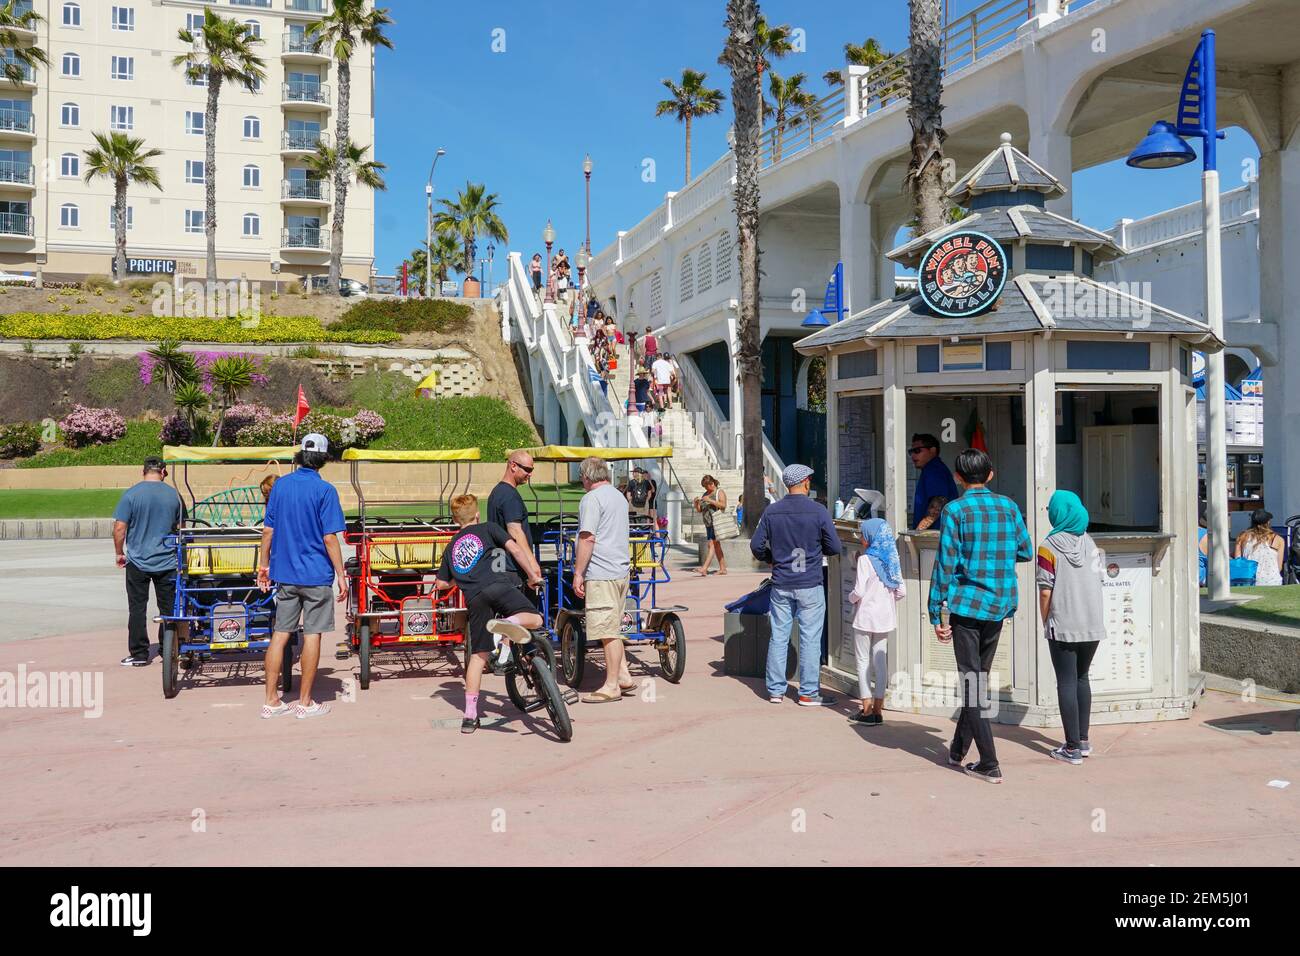 Die Strandpromenade neben dem Pier, ein Betonweg, der von Spaziergängern und Radfahrern geteilt wird. Touristenziel mit kleinem Imbiststand und Laden nebenan Stockfoto